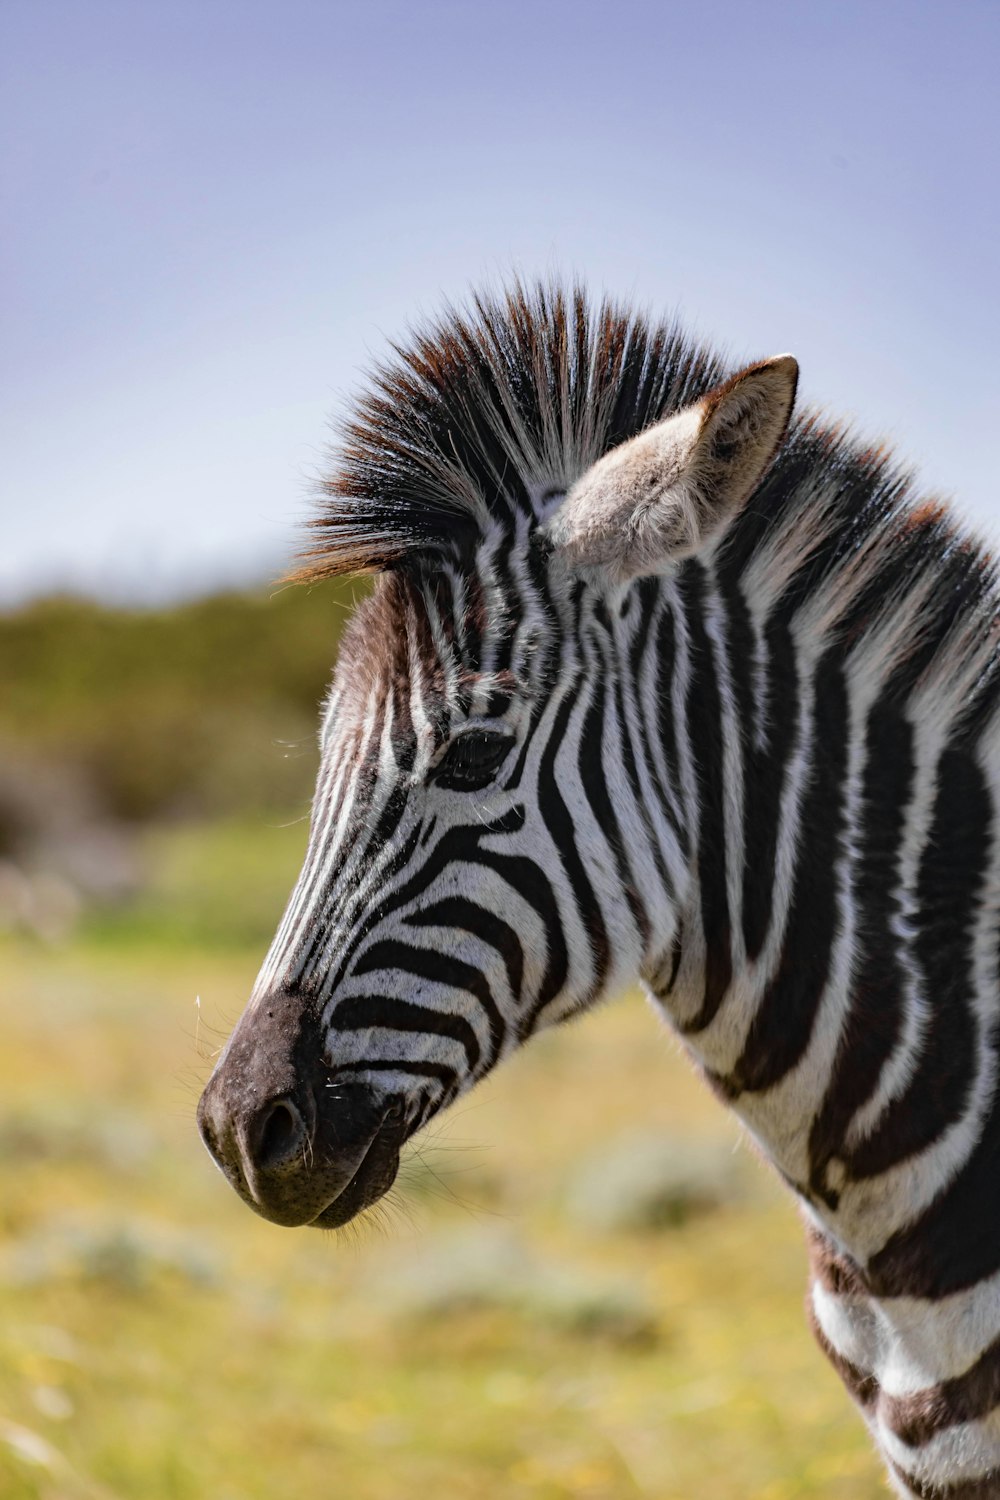 a zebra stands in a field